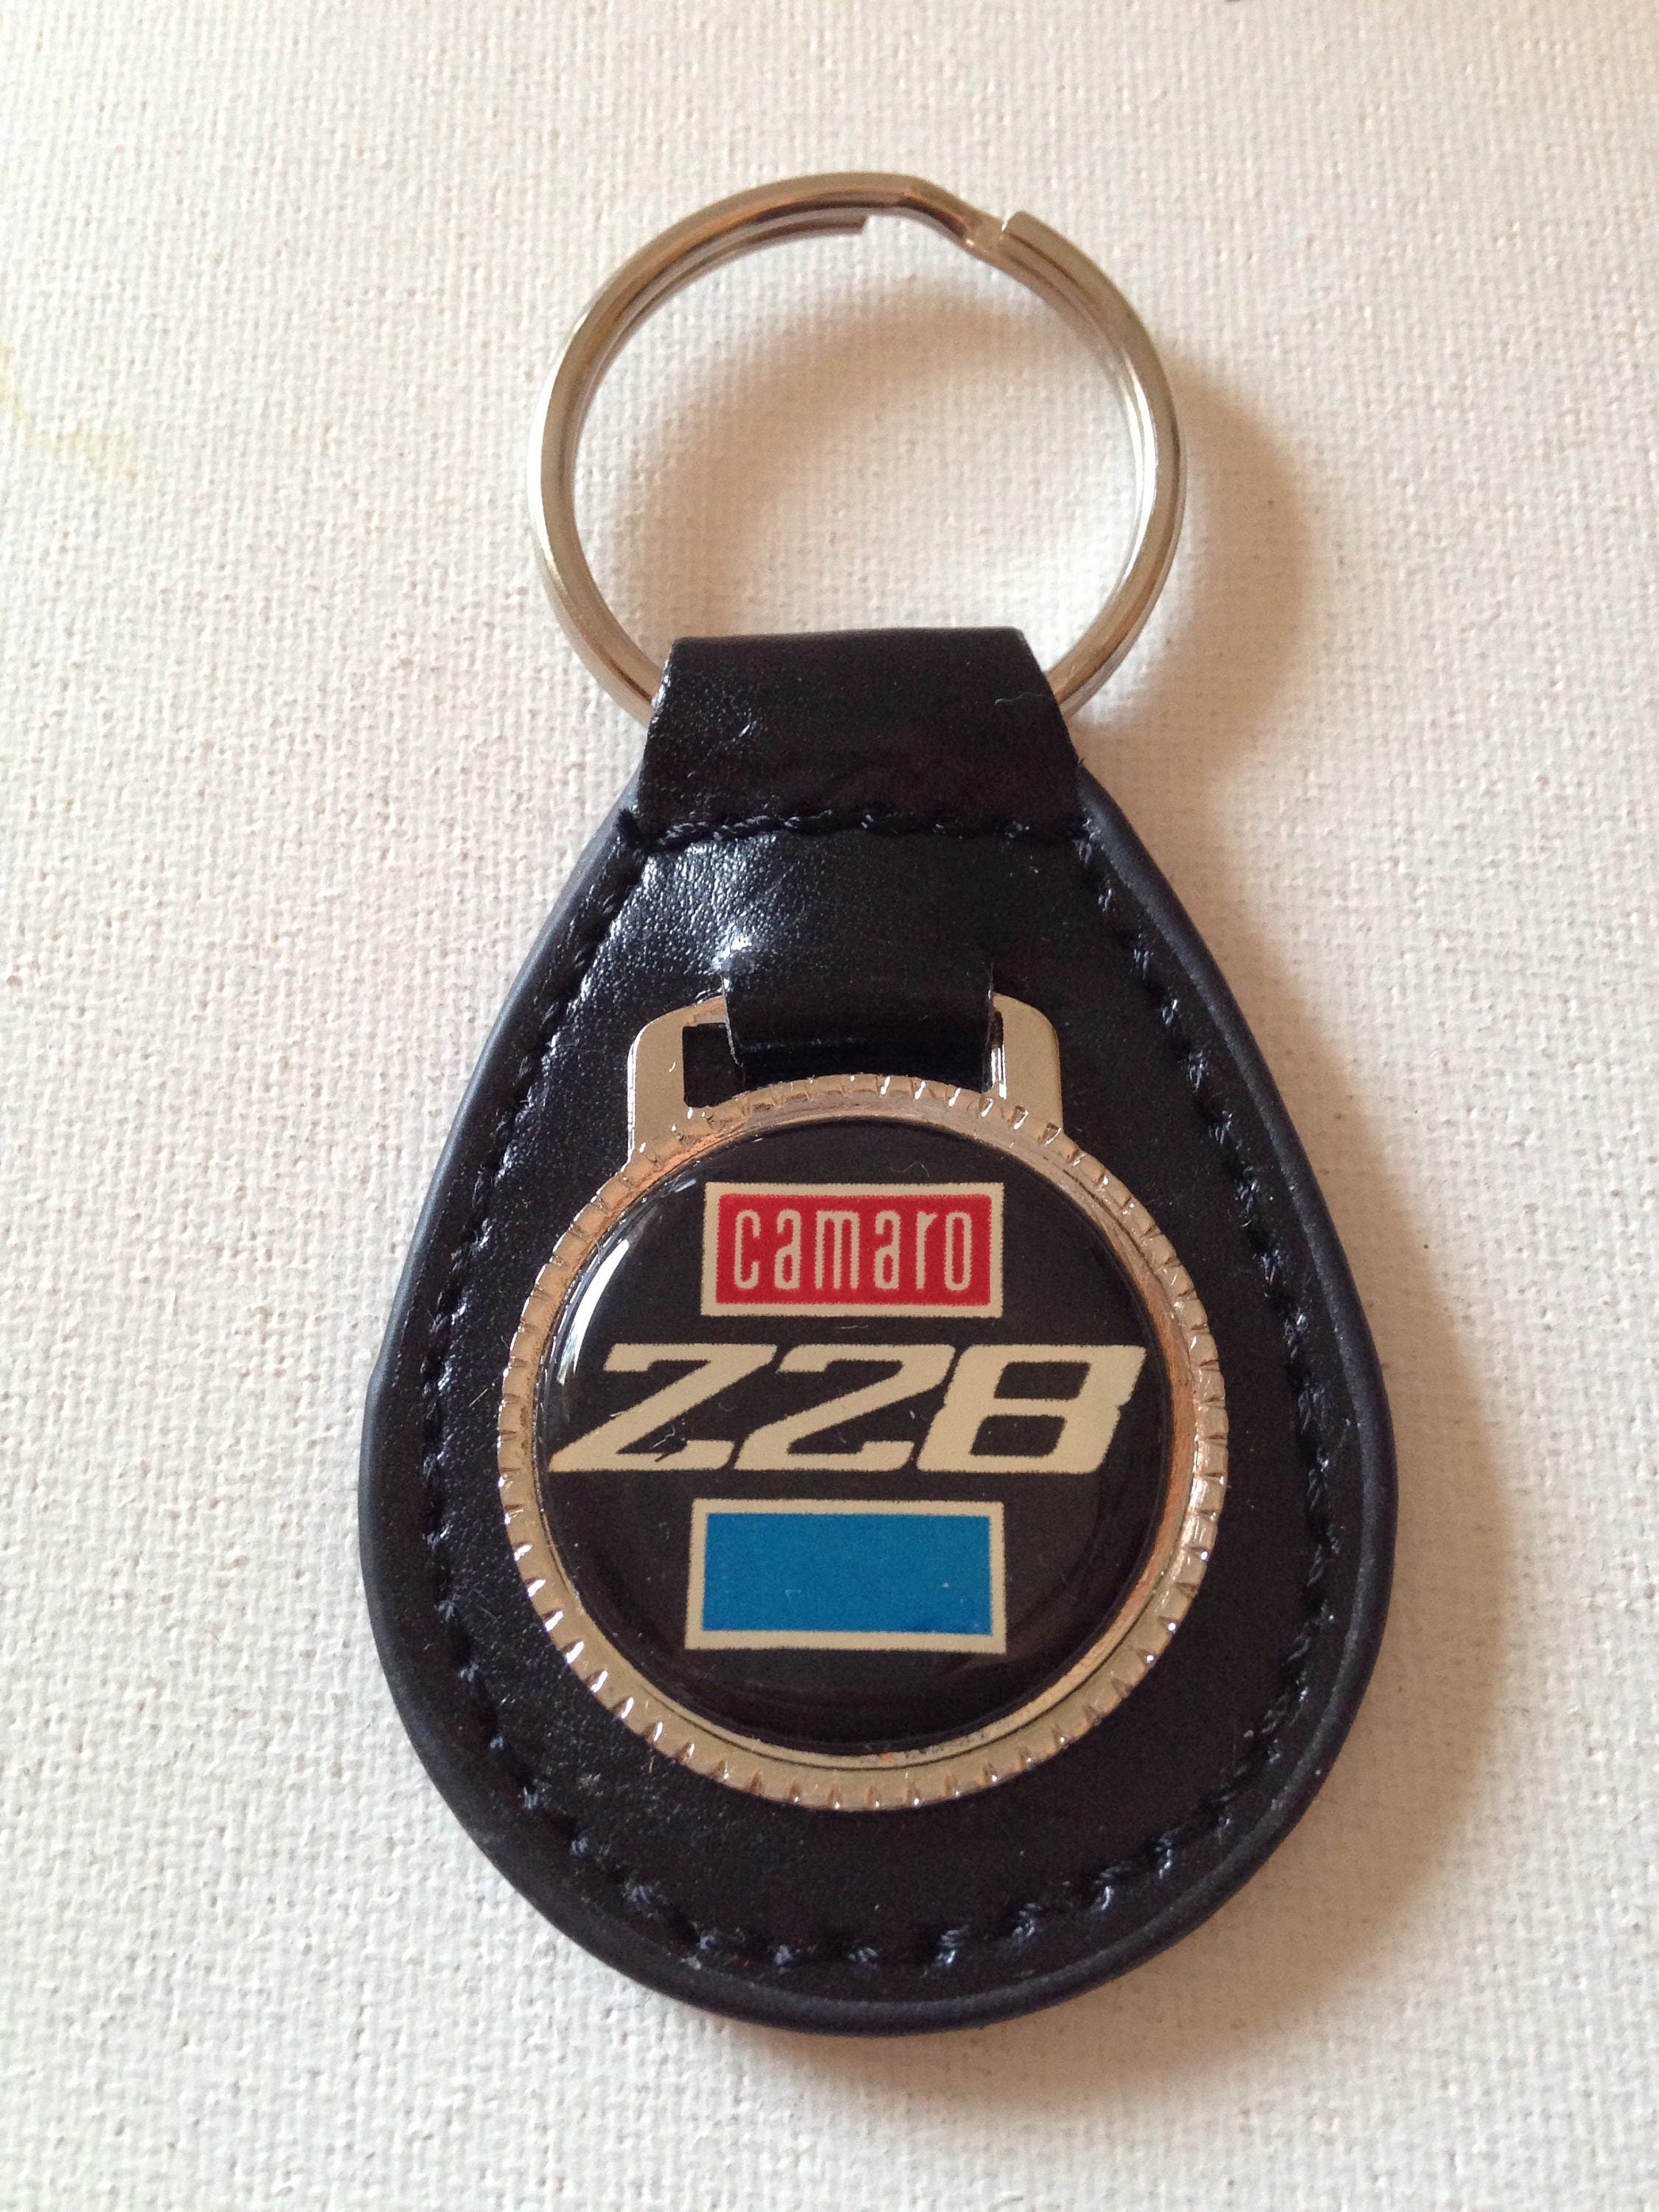 Chevrolet Camaro Z28 Keychain Black Leather Chevrolet Key